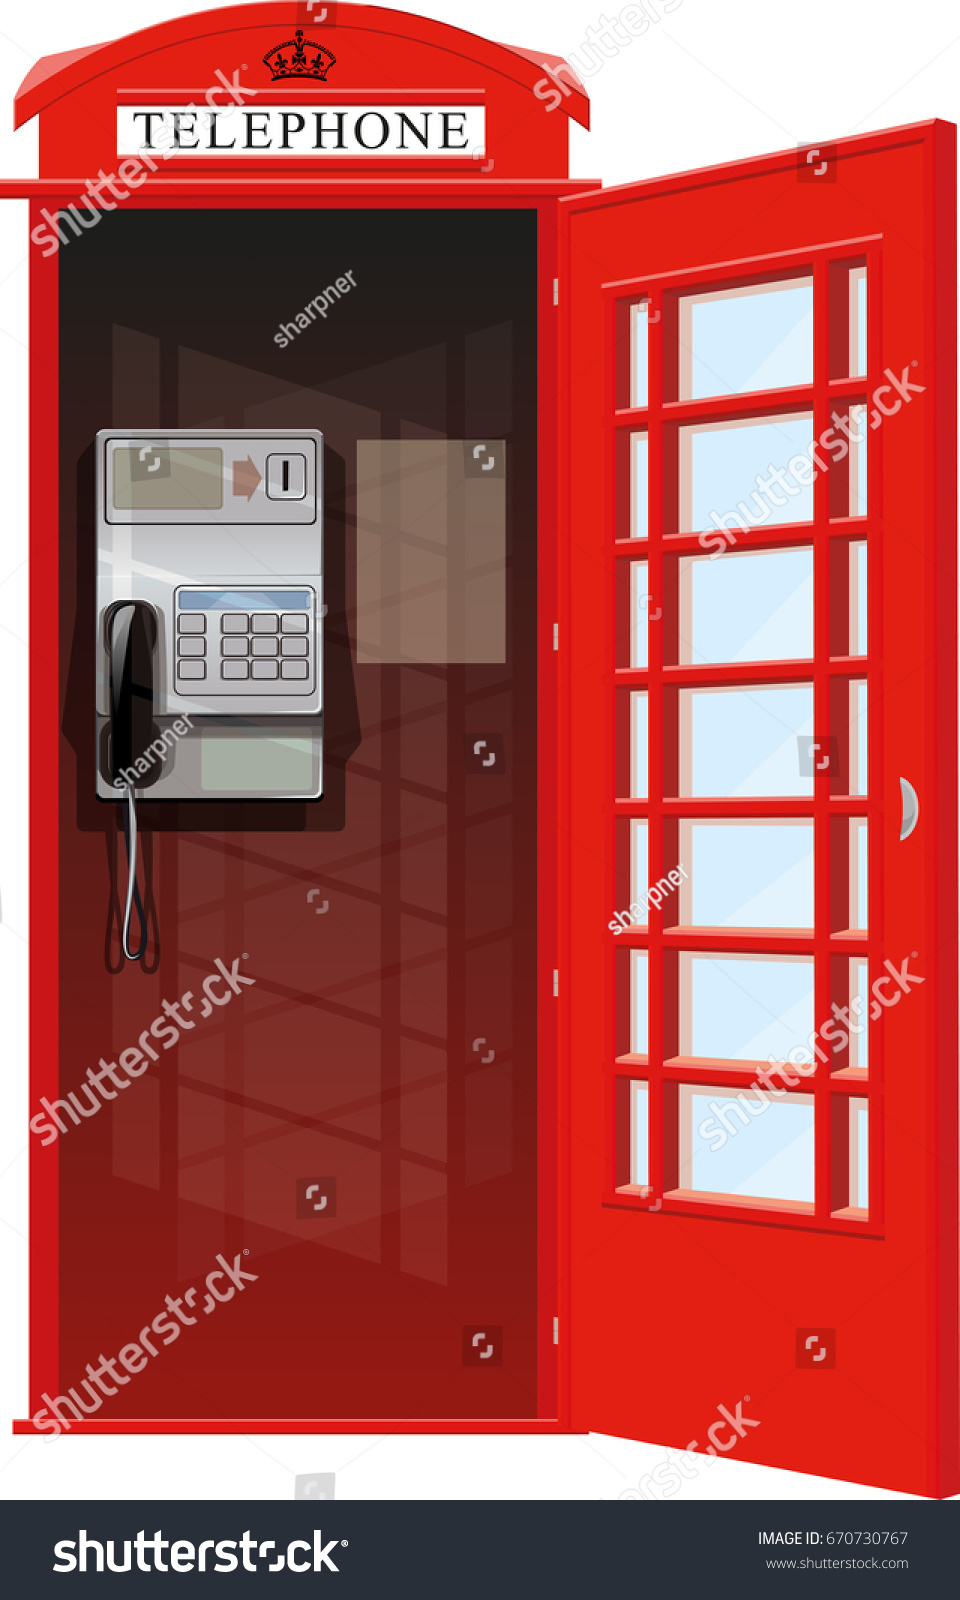 Открыть звонкий. Телефонная будка к2. Телефонная будка Лондон с открытой дверью. Открытая телефоная булка. Красная телефонная будка на белом фоне.